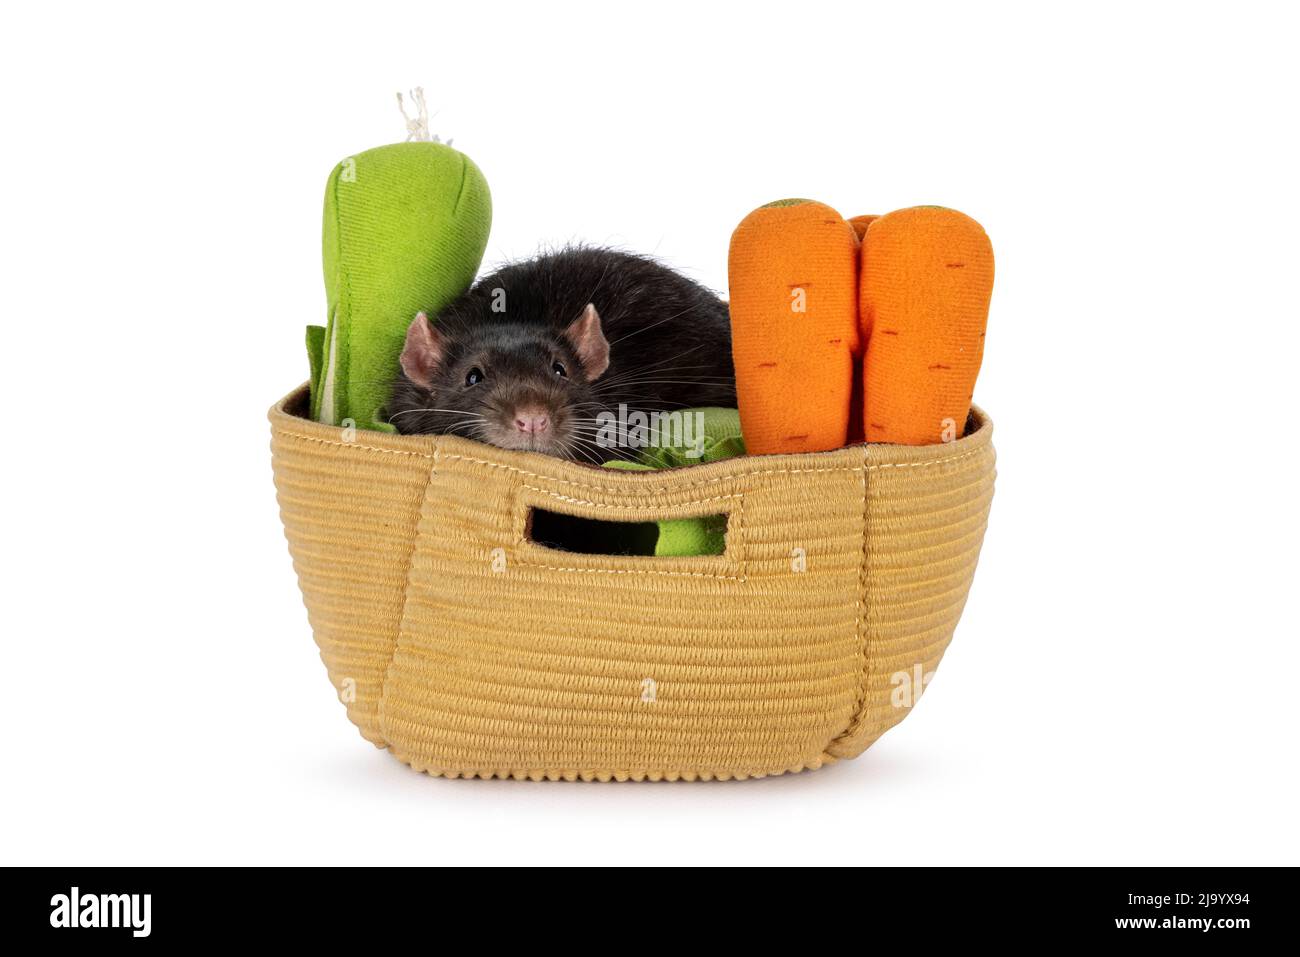 Cute ratto marrone scuro dell'animale domestico, seduto nel cestino del giocattolo con le verdure fatte dal feltro. Guardando verso la fotocamera con occhi beady. Isolato su sfondo bianco. Foto Stock